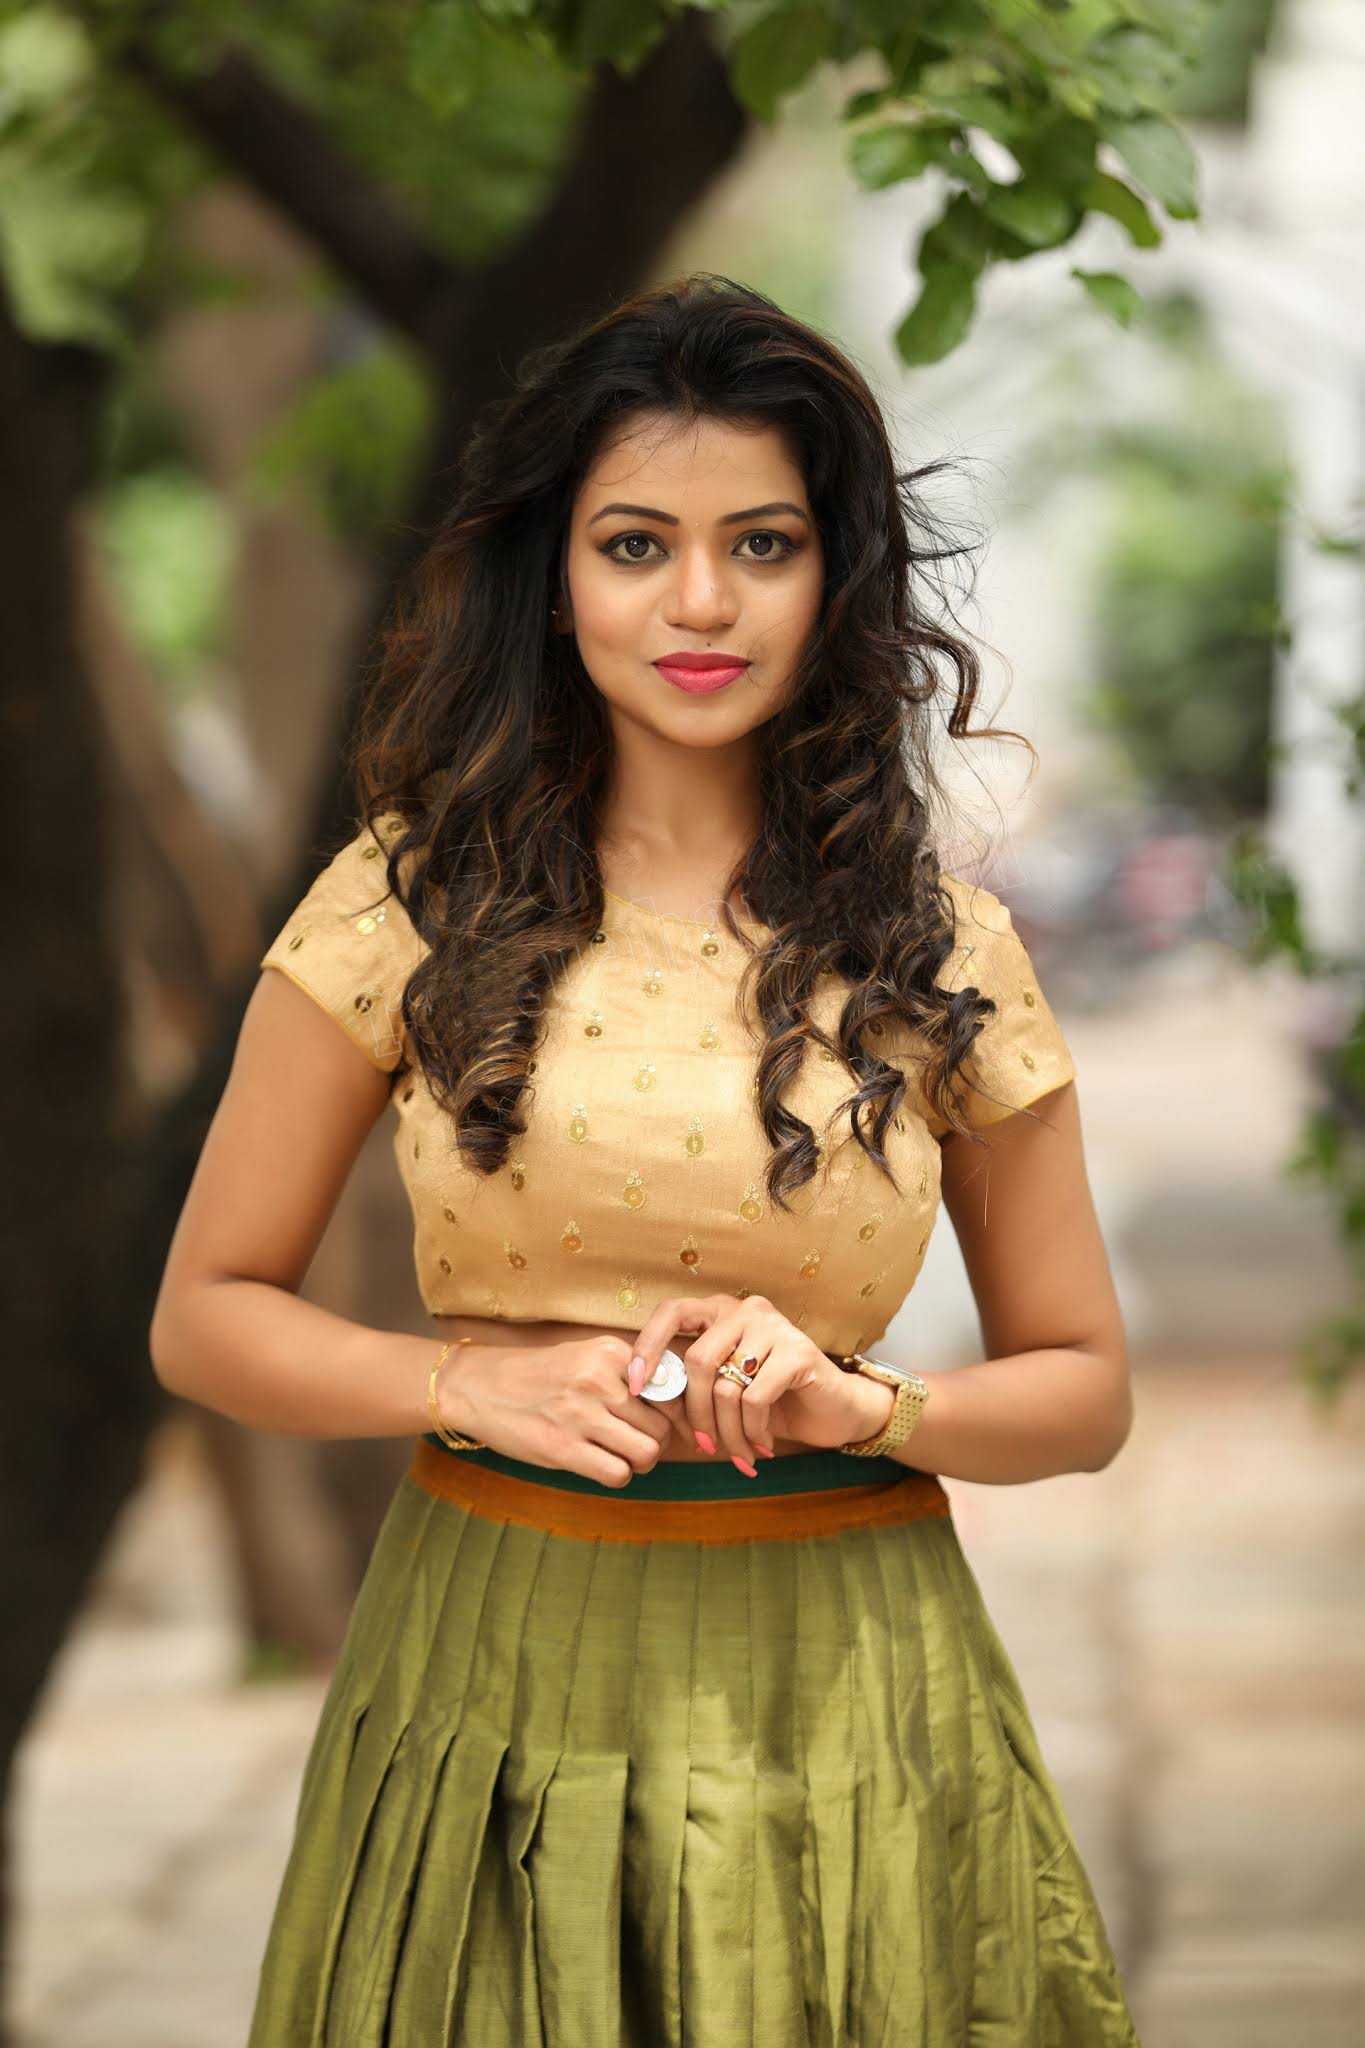 Bhavya Sree Loose Hair Cute Look In Green Skirt